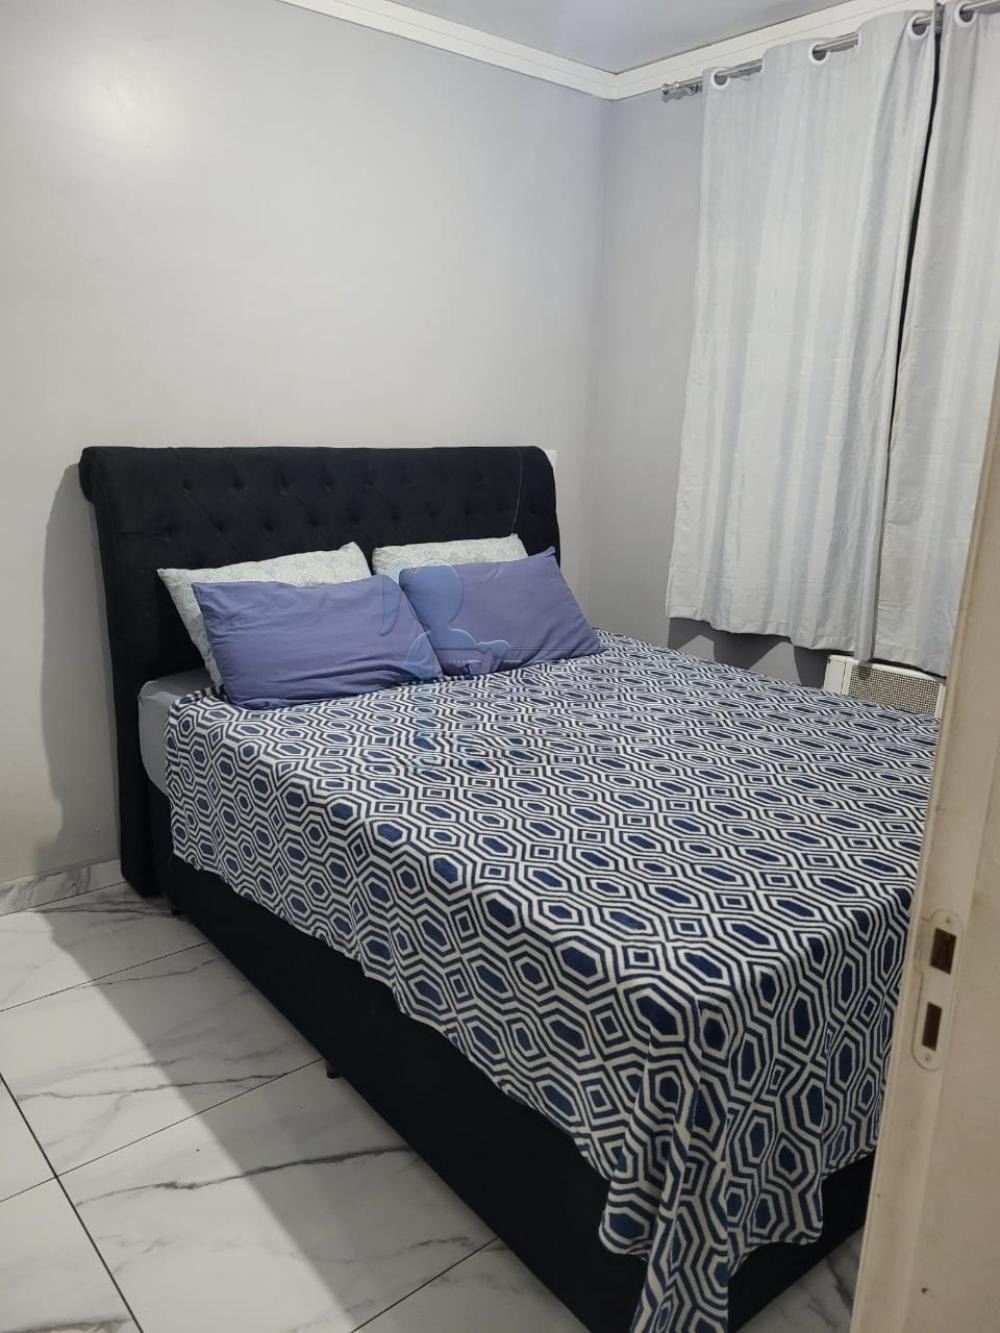 Comprar Apartamento / Padrão em Ribeirão Preto R$ 160.000,00 - Foto 5